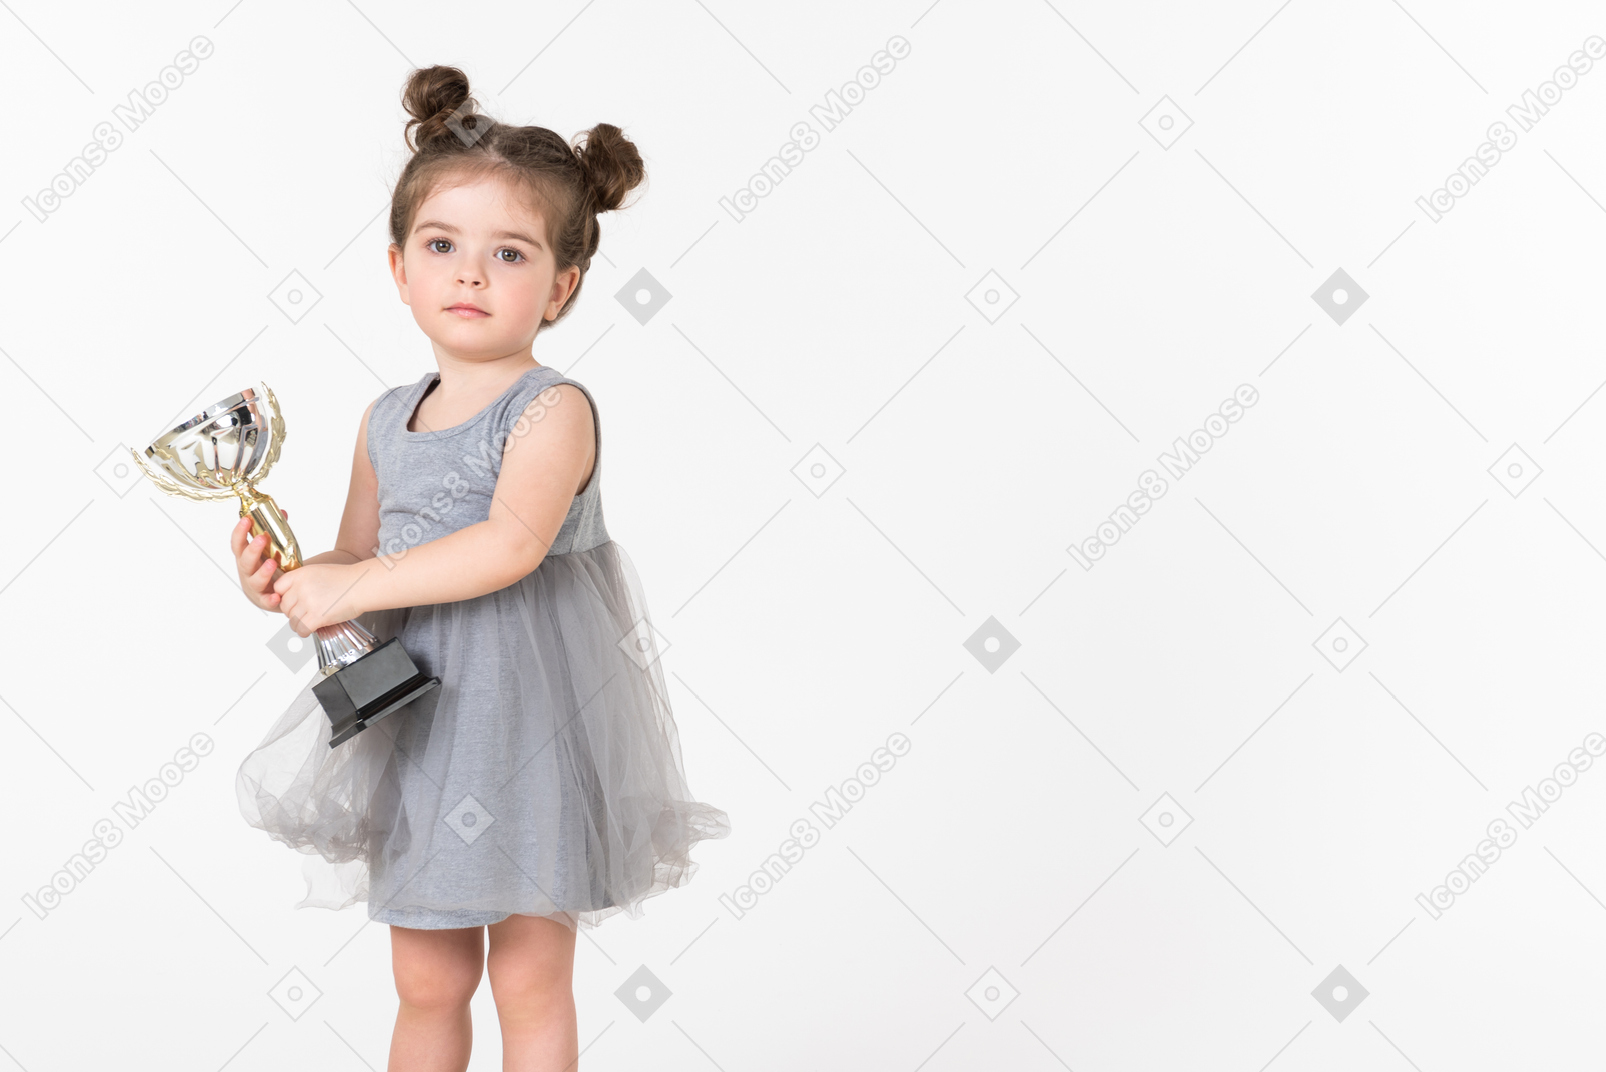 Bambina che tiene una tazza del premio